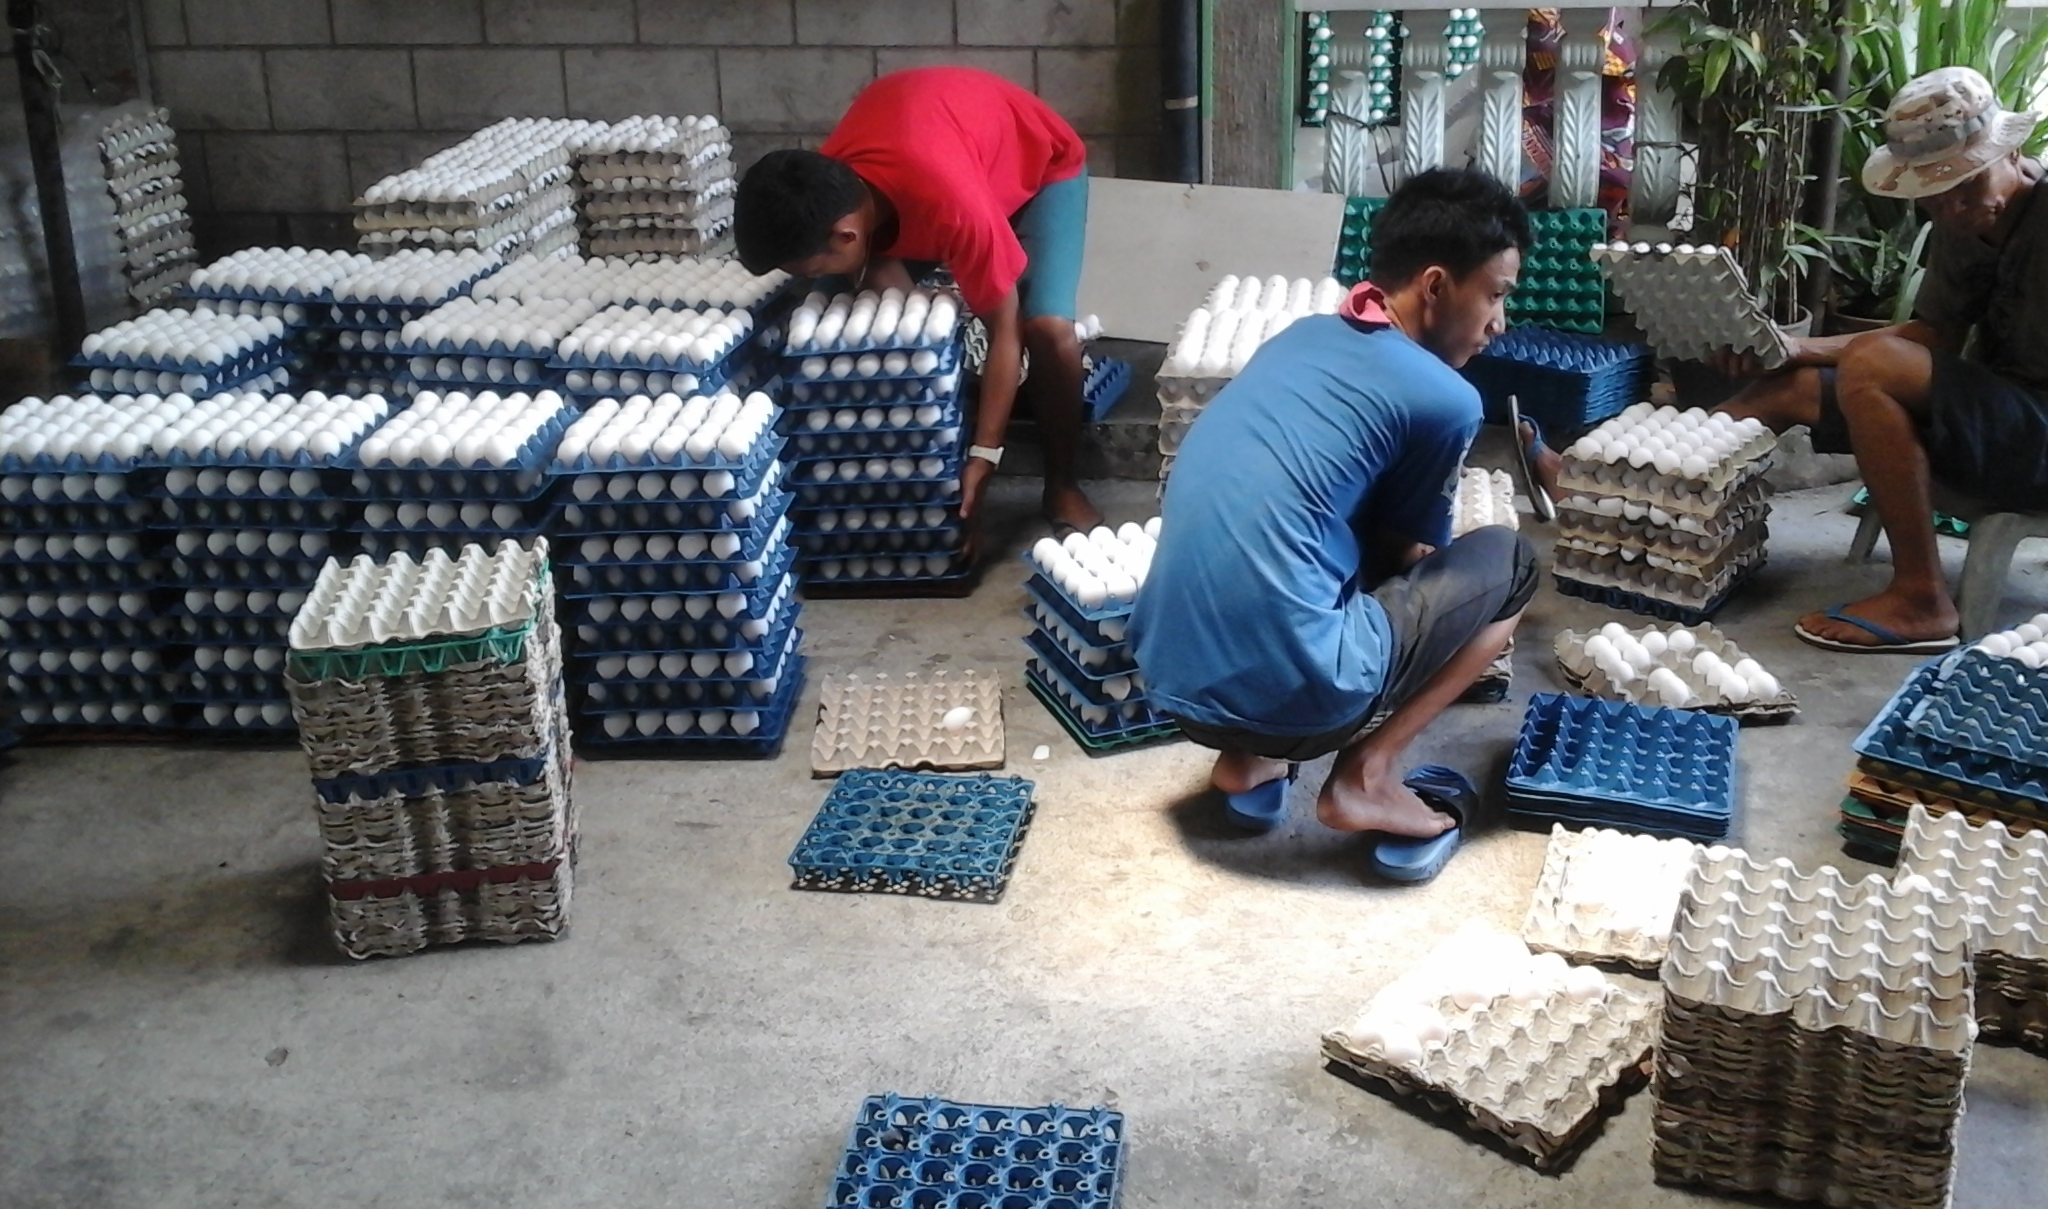 Ouvriers agricoles organisant des œufs aux Philippines